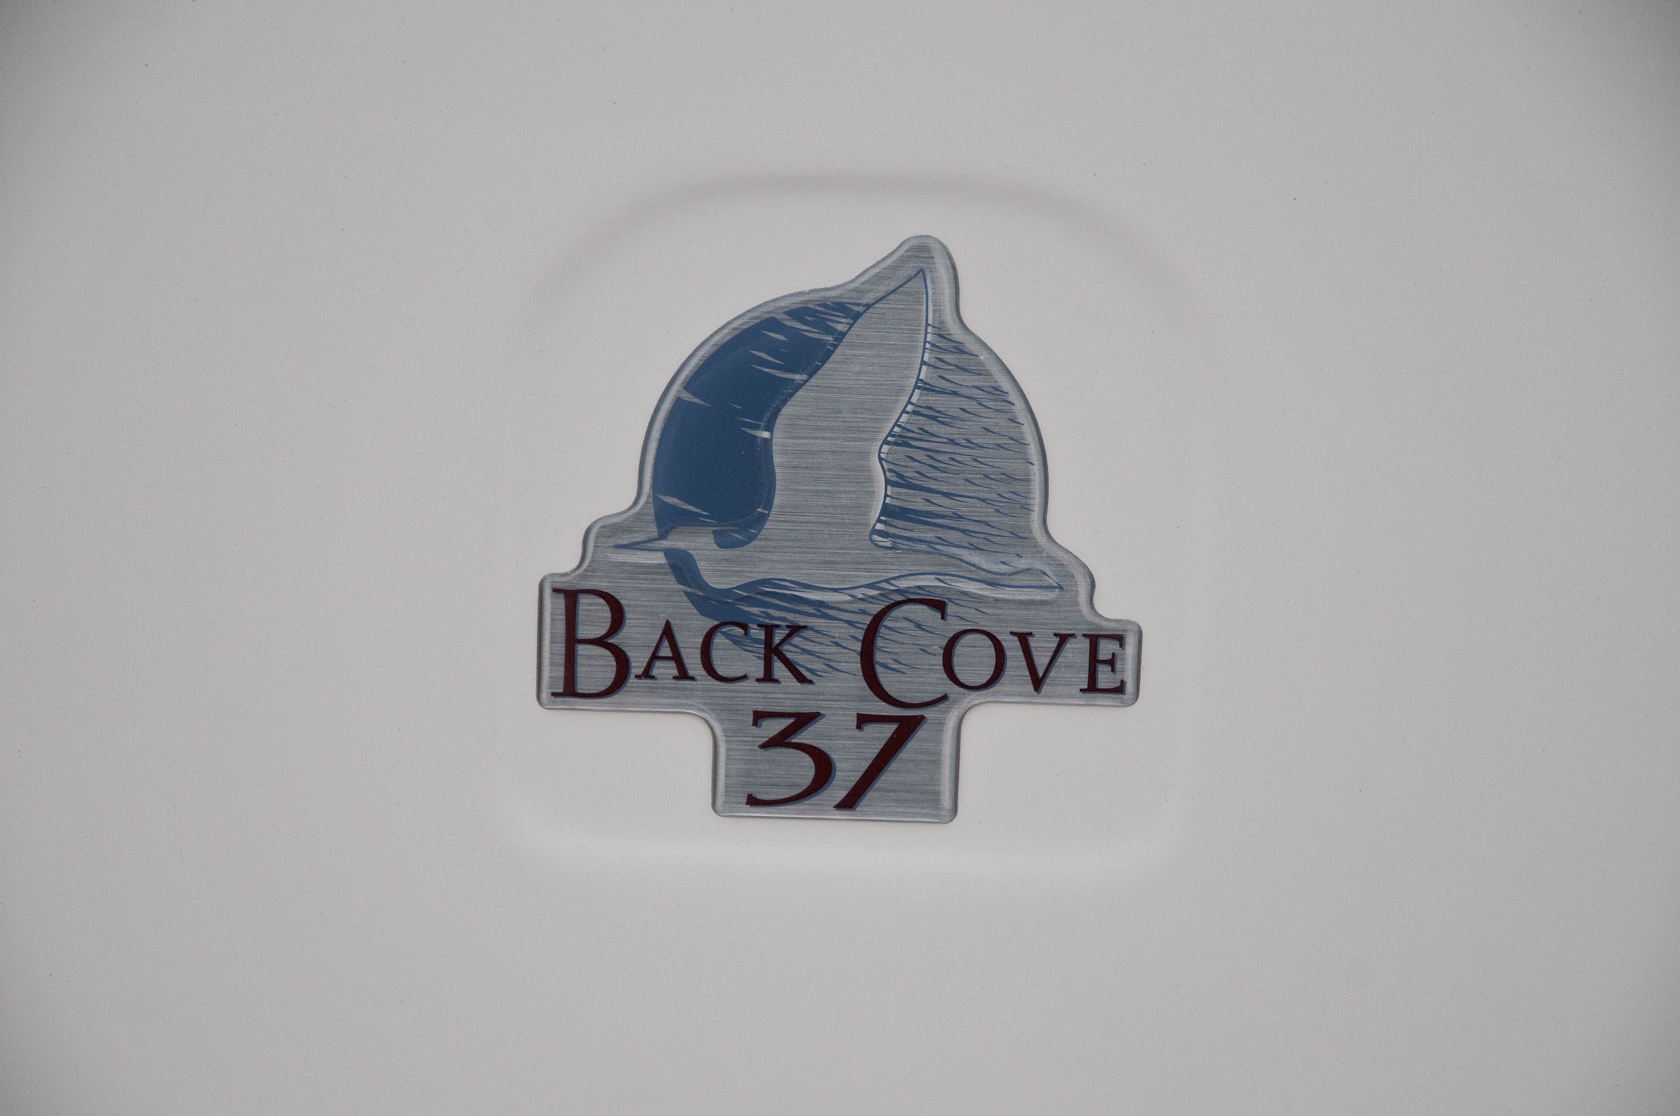 Back Cove 37